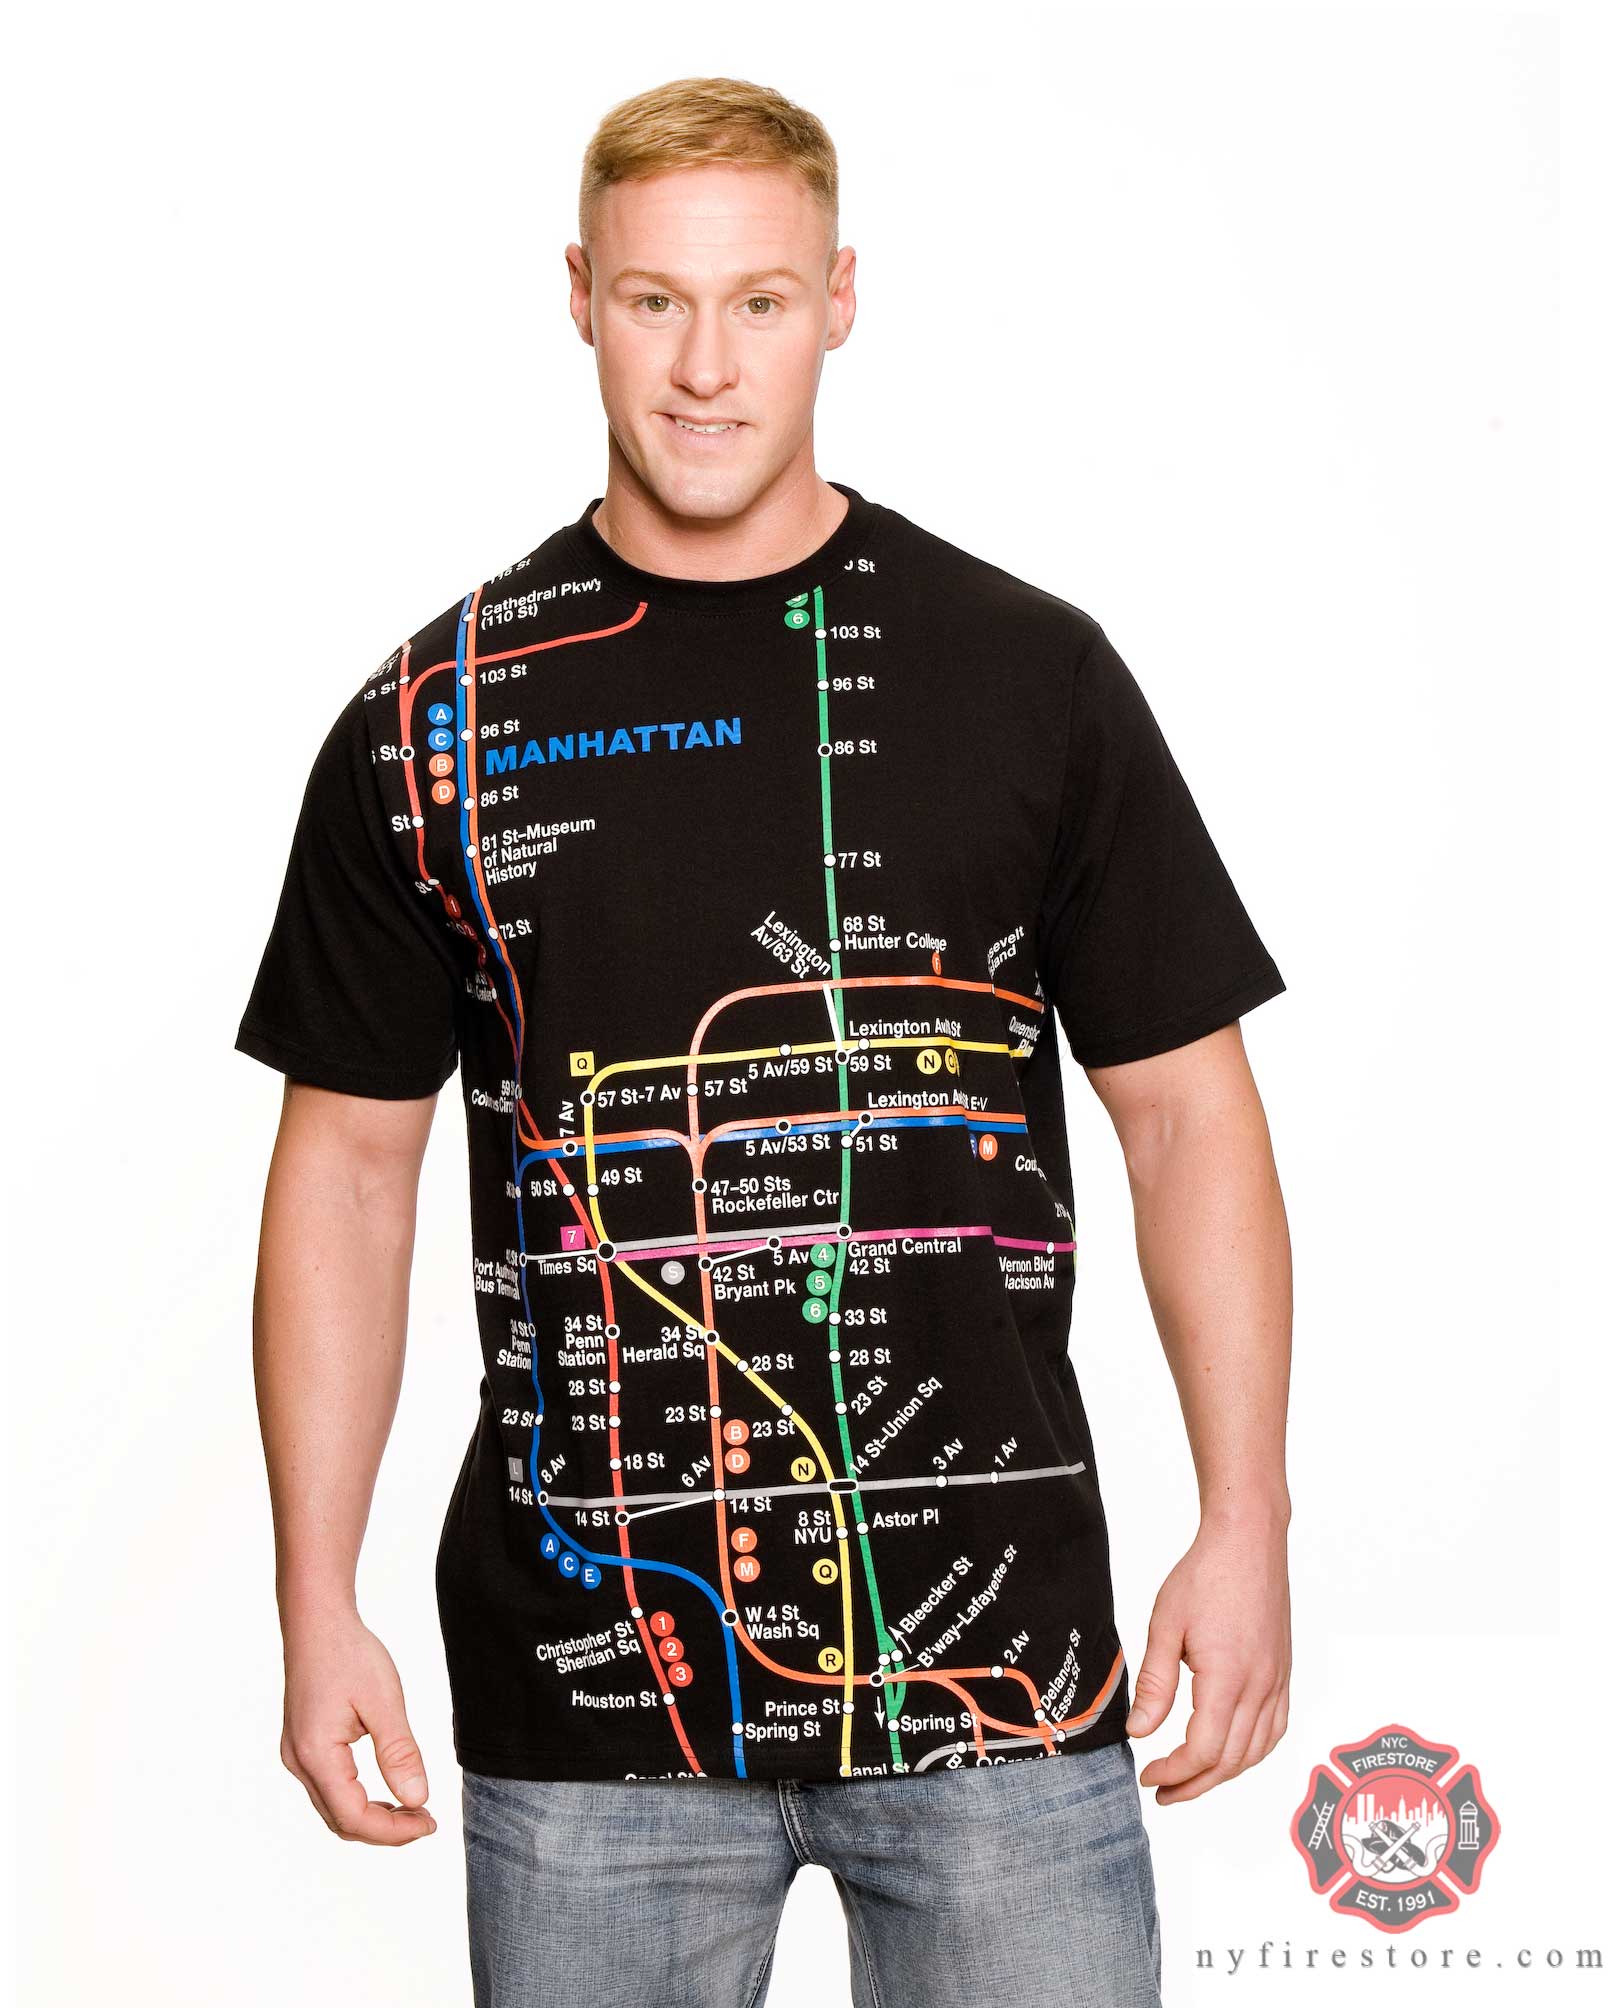 Subway Fan Shirt 